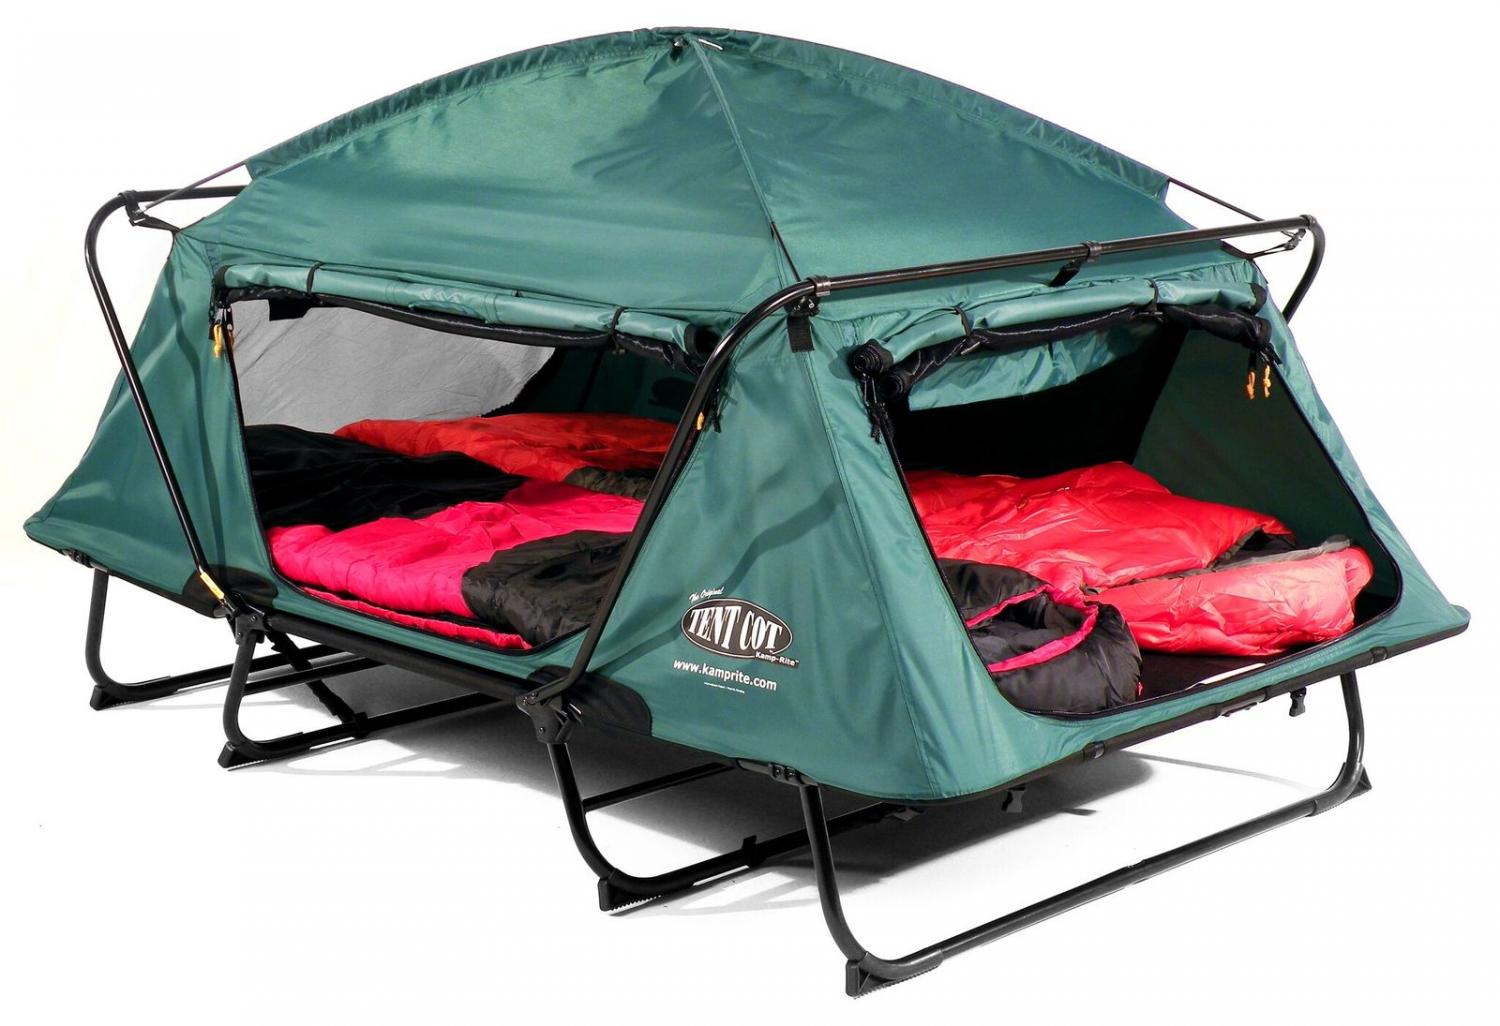 Kamp-Rite Tent cot